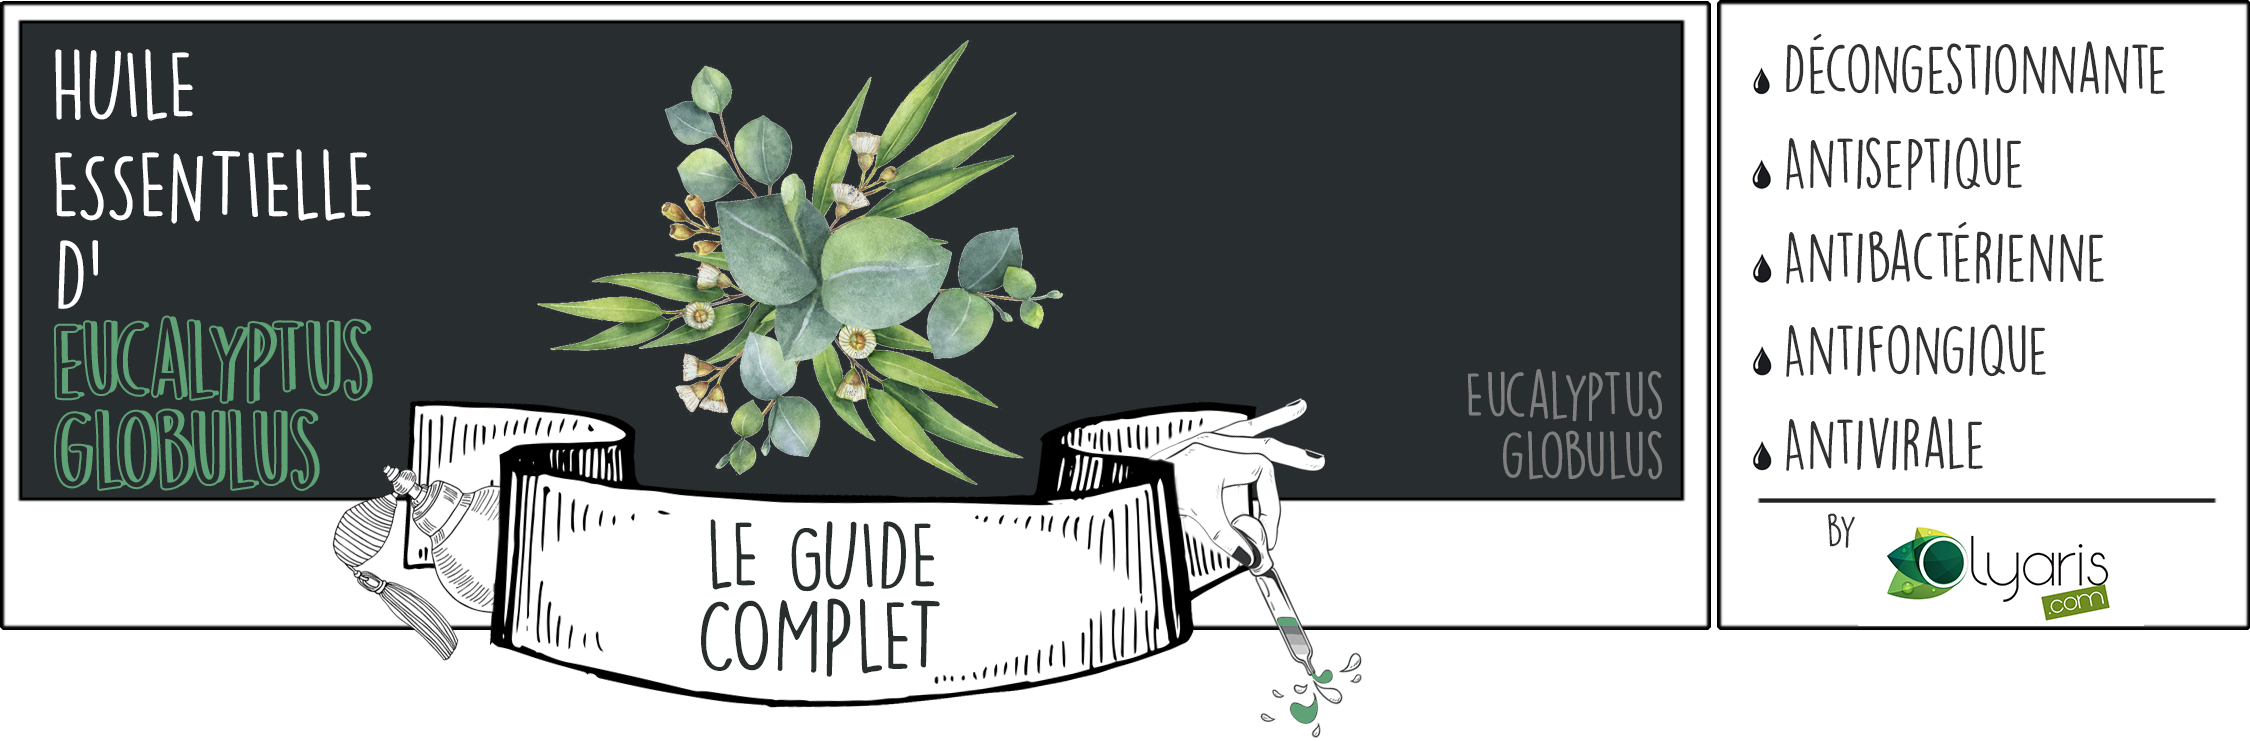 Huile essentielle d'eucalyptus globulus : utilisation et bienfaits